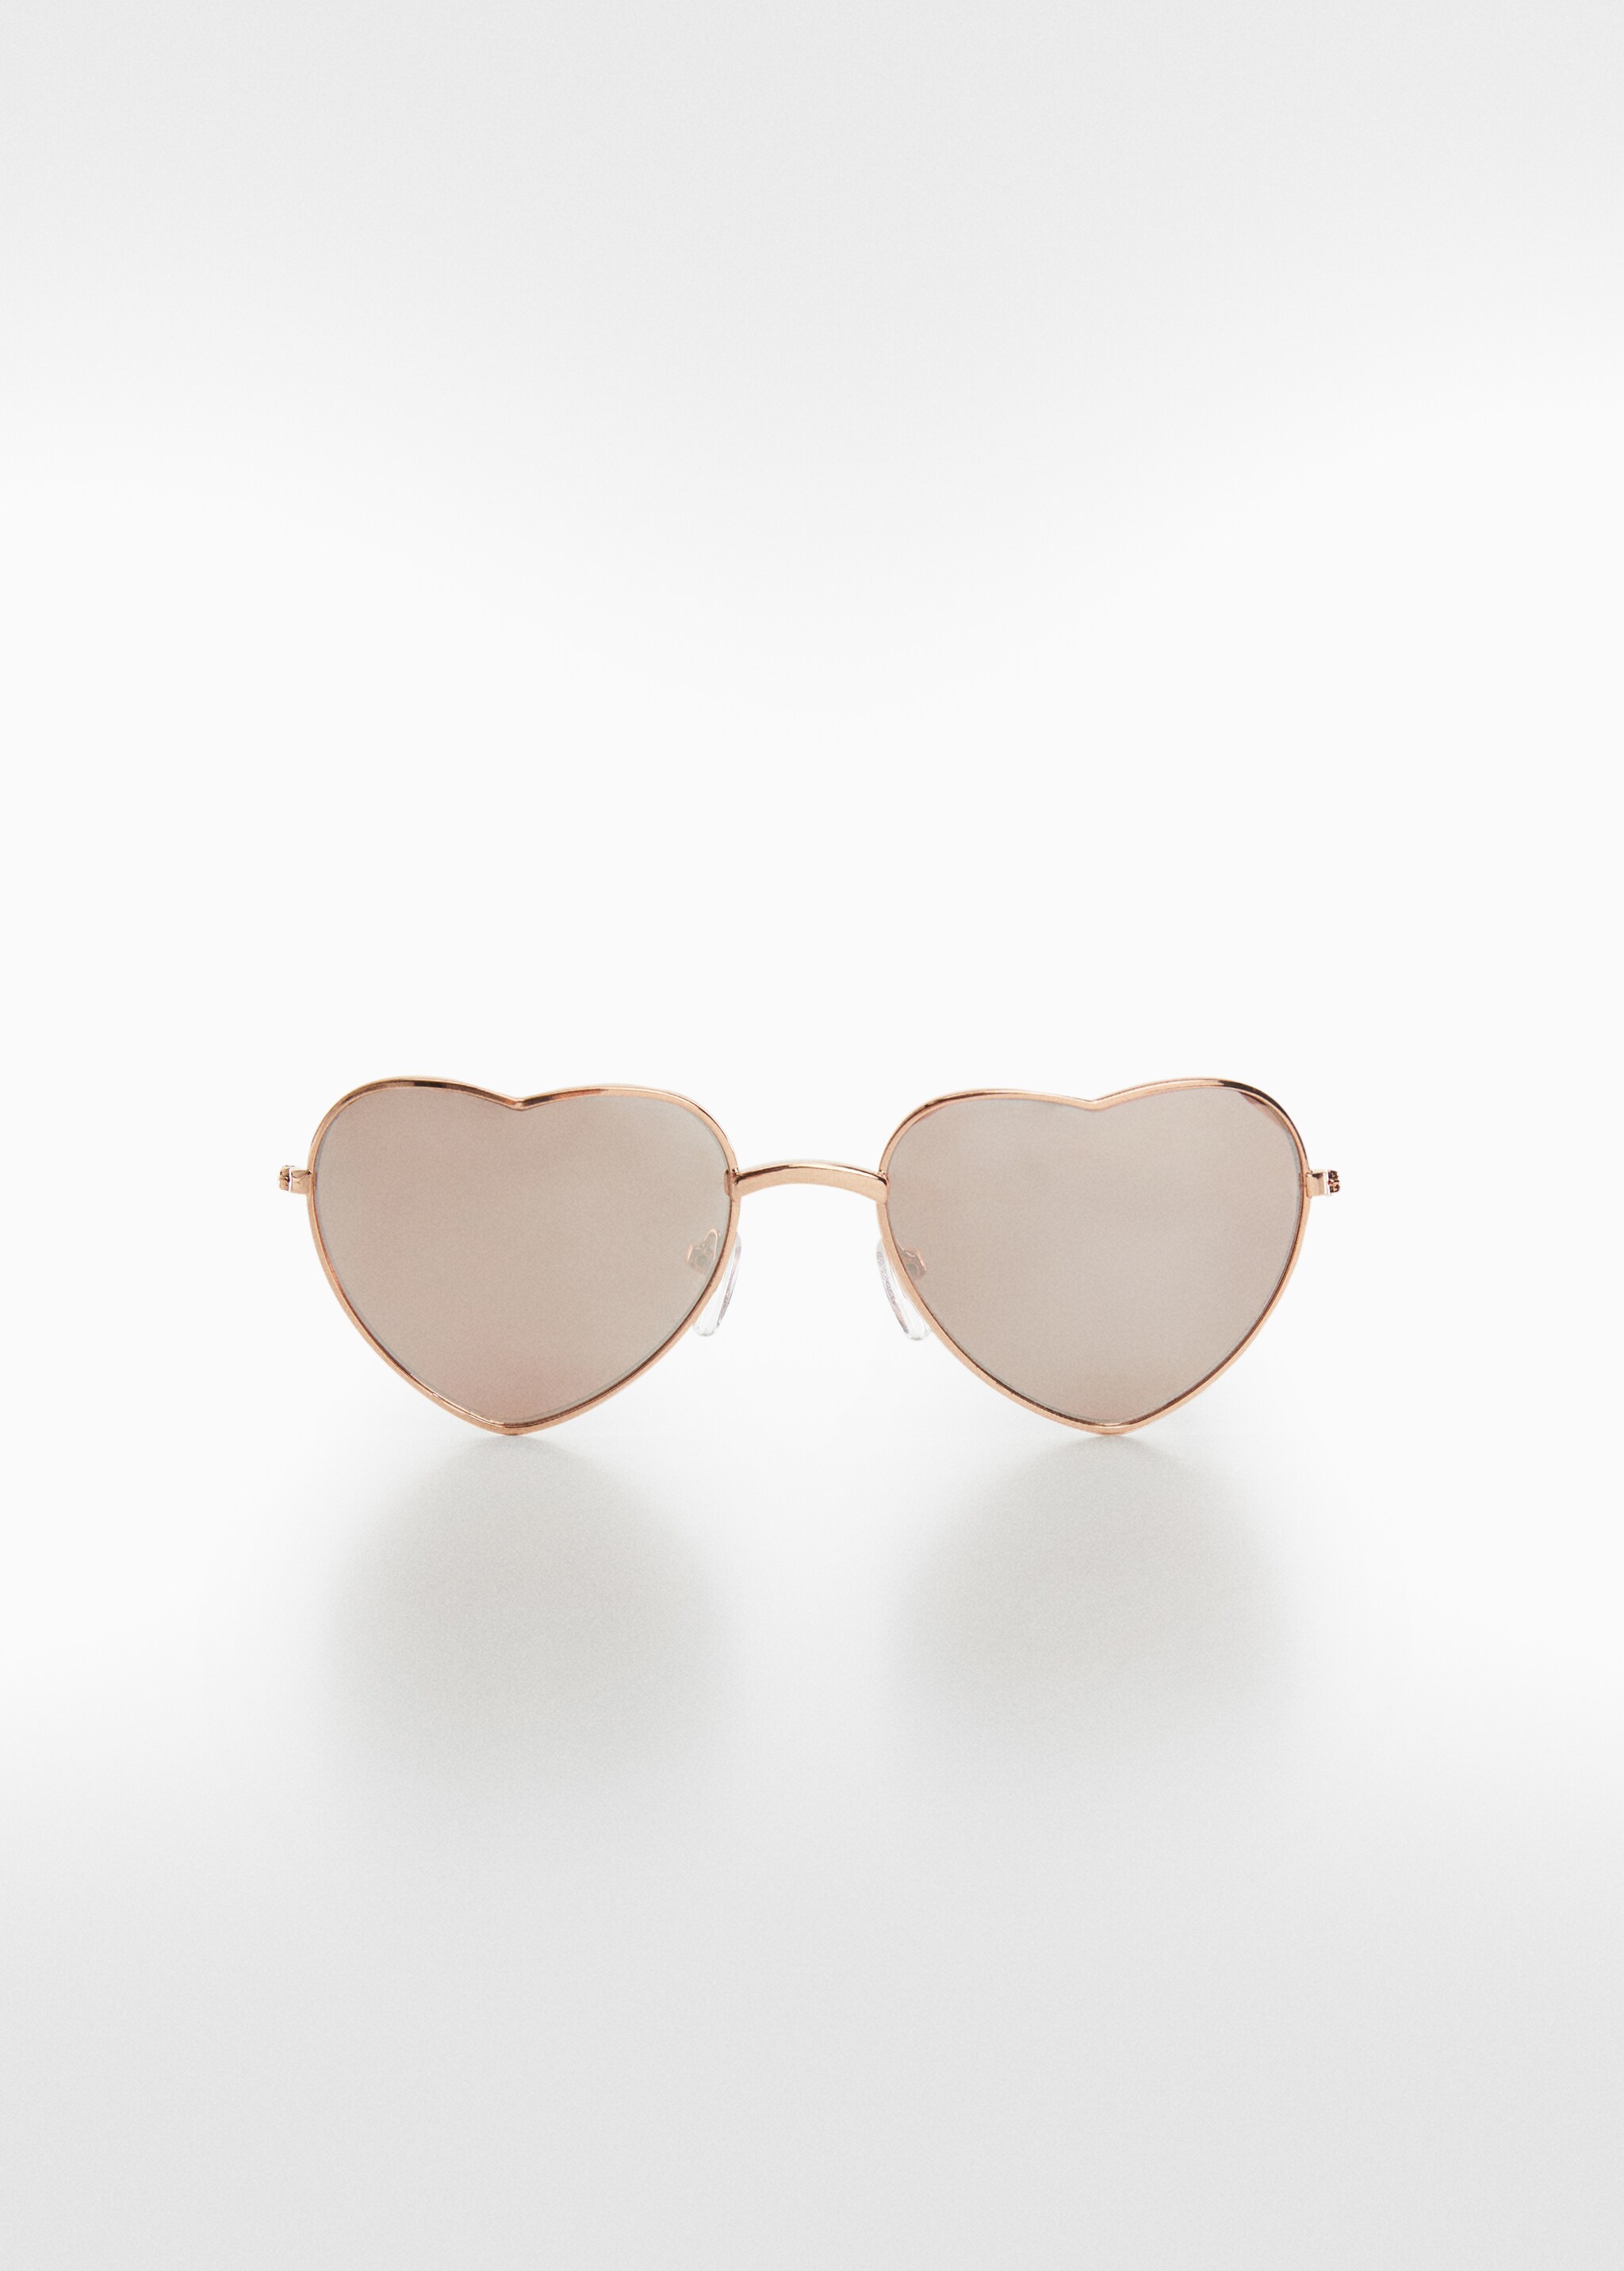 Солнцезащитные очки в форме сердца - Изделие без модели